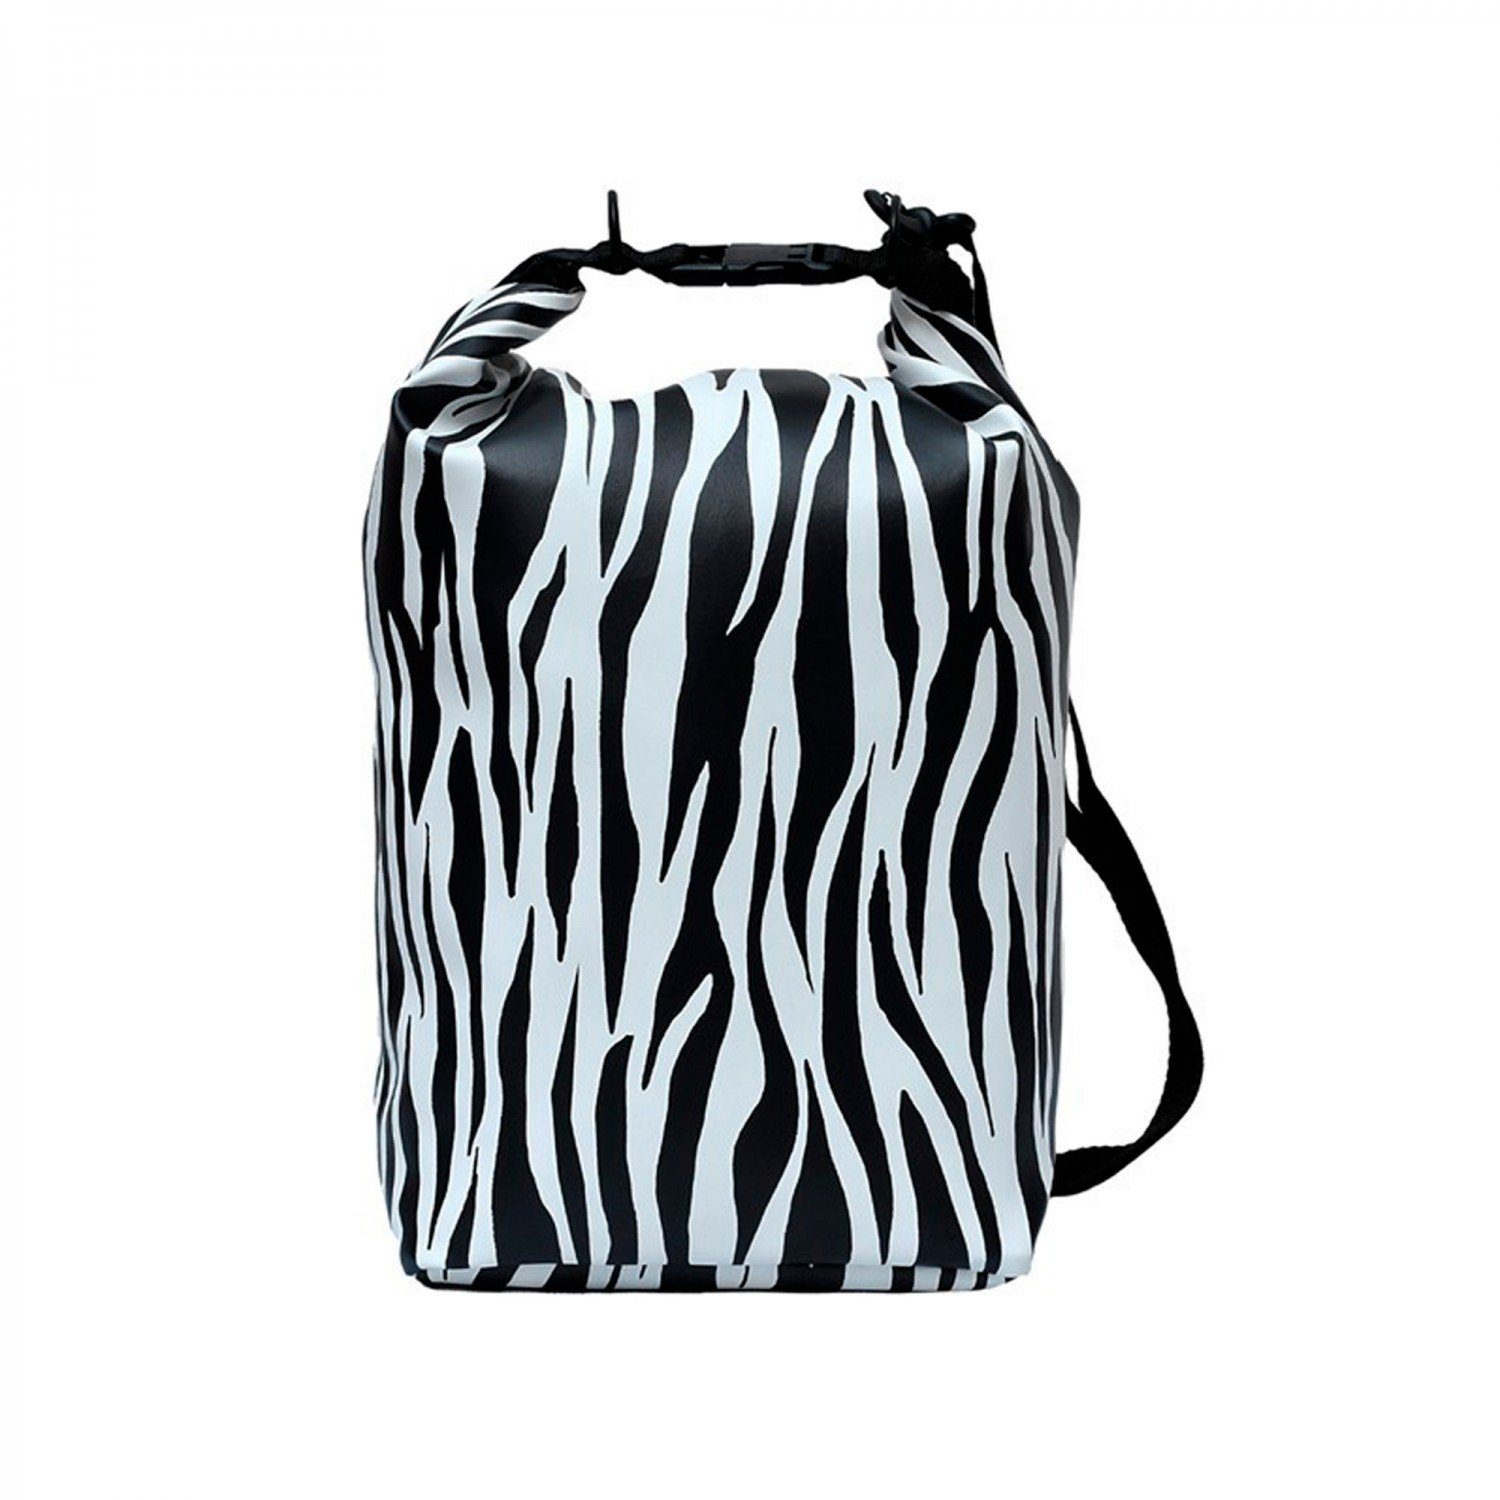 10L, mitienda Drybag Zebra wasserdicht Drybag Trockentasche